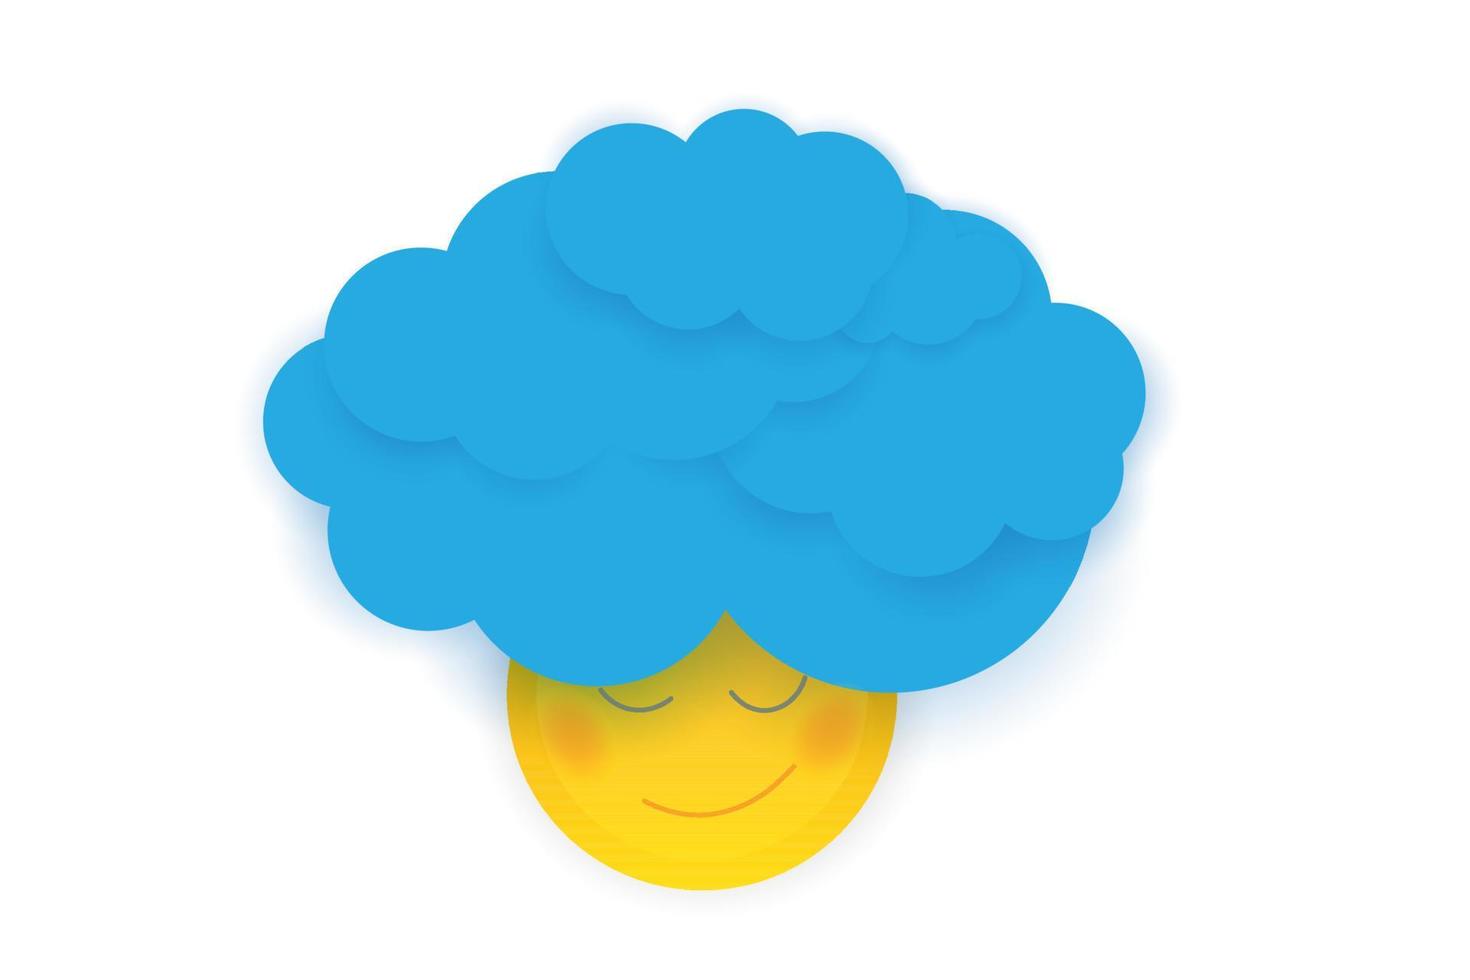 lachend zonkarakter met krullend haar gemaakt van blauwe wolken. vector